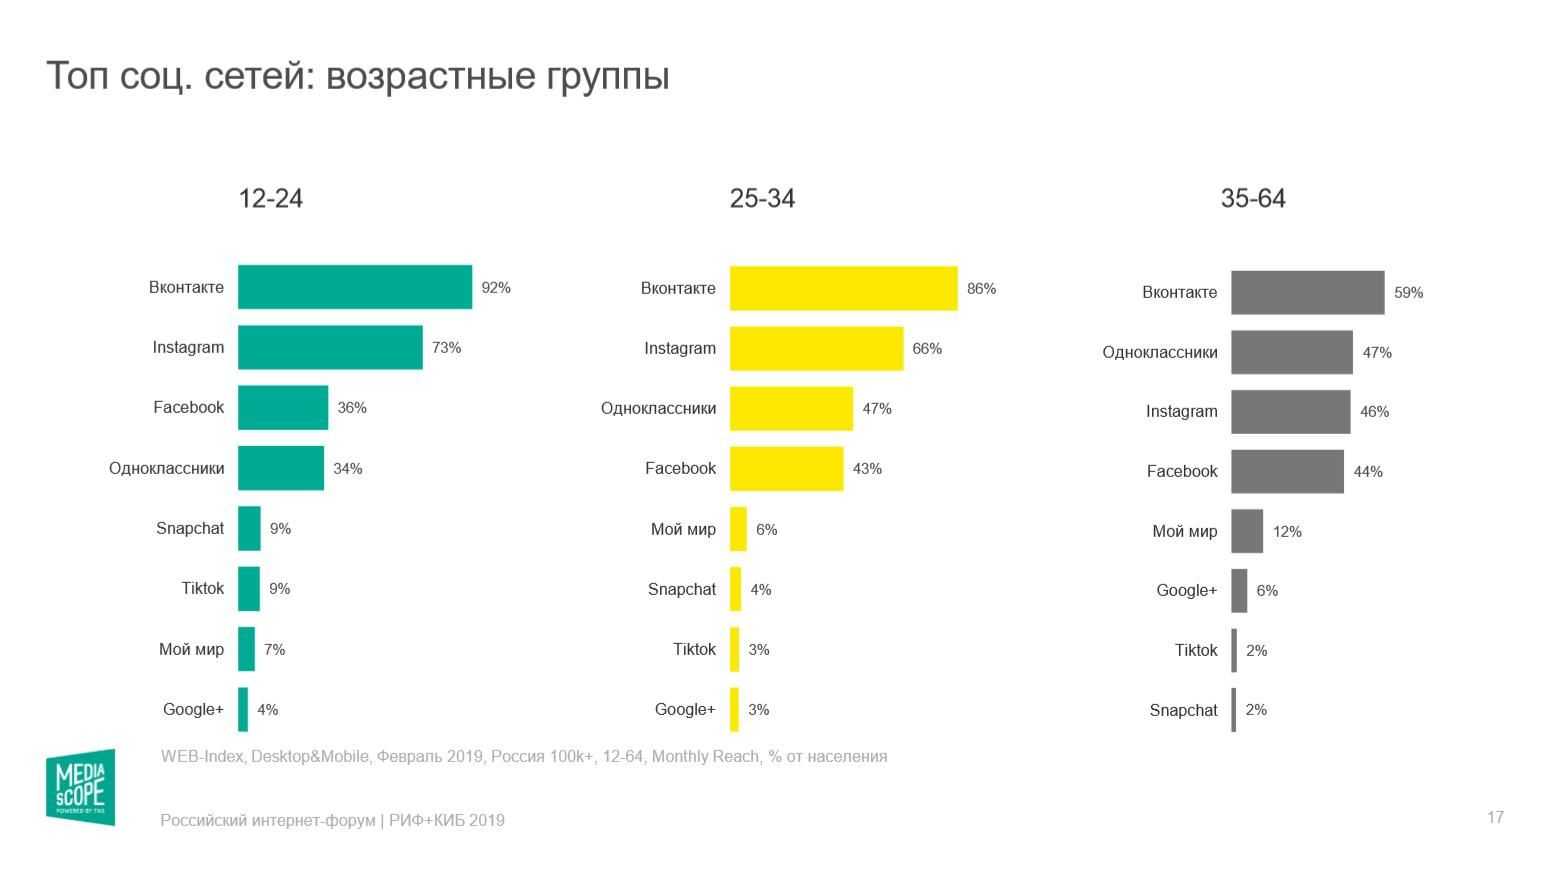 Яндекс или google, чем больше пользуются в странах снг